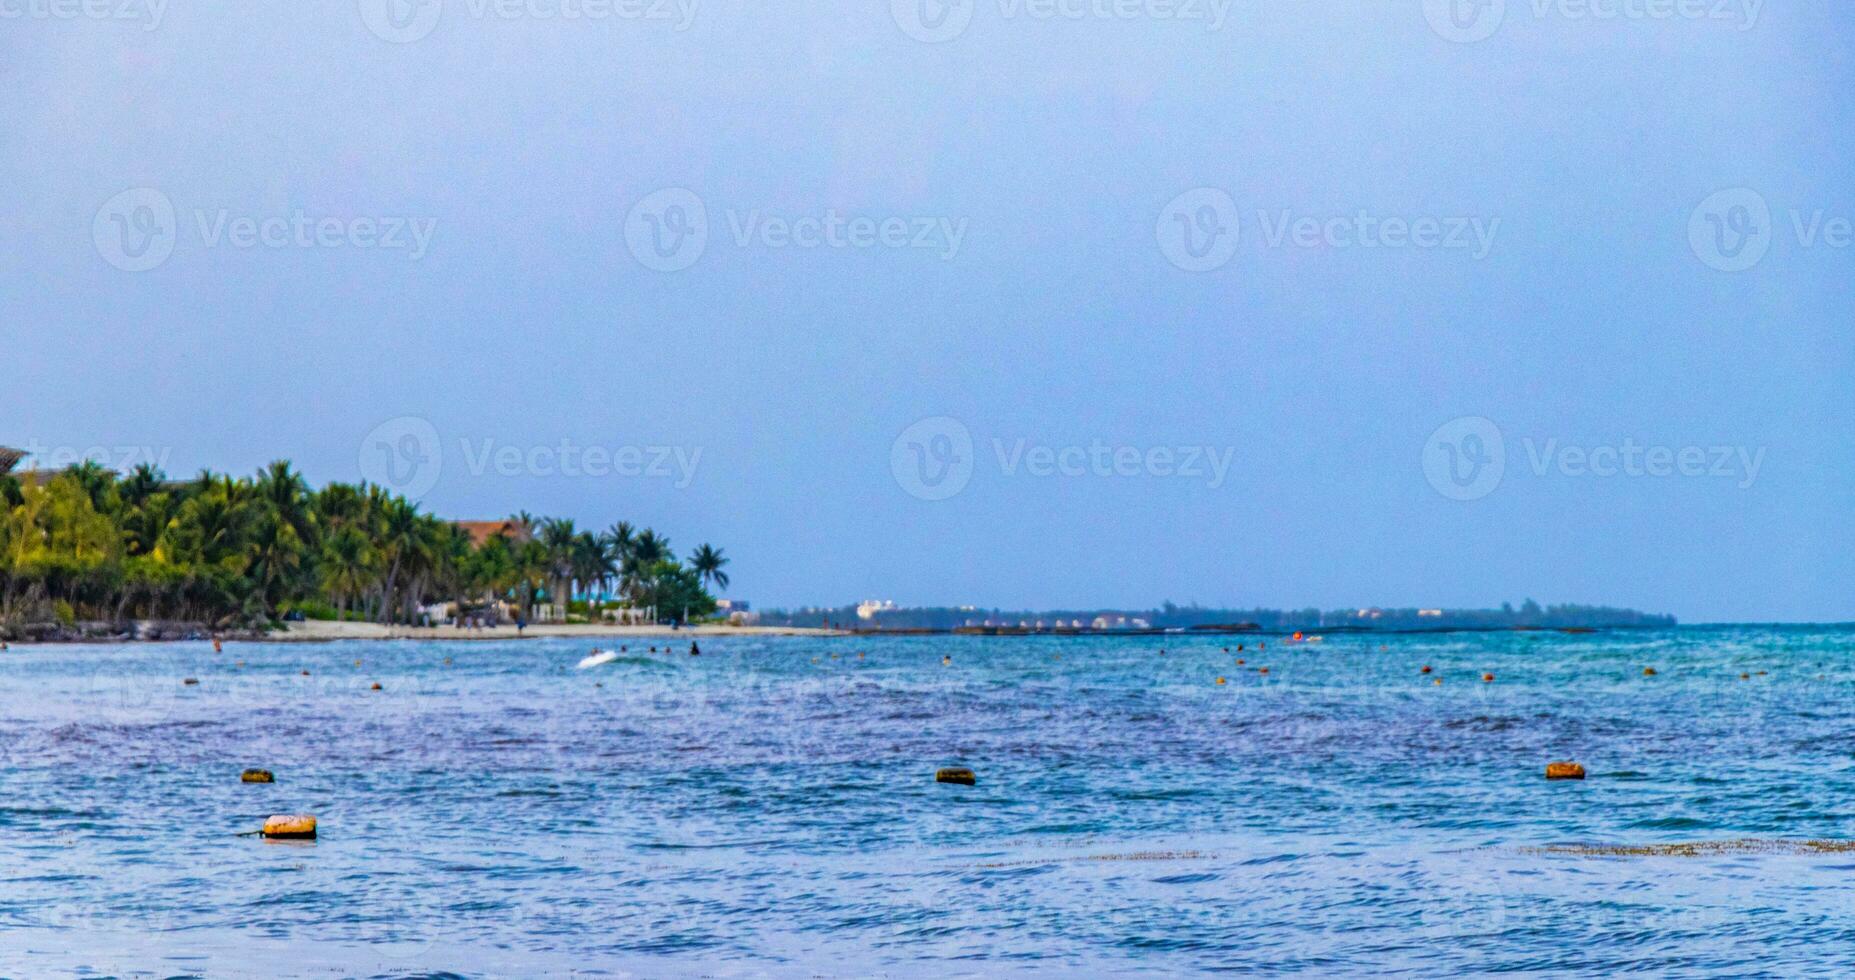 spiaggia messicana tropicale chiara acqua turchese playa del carmen messico. foto